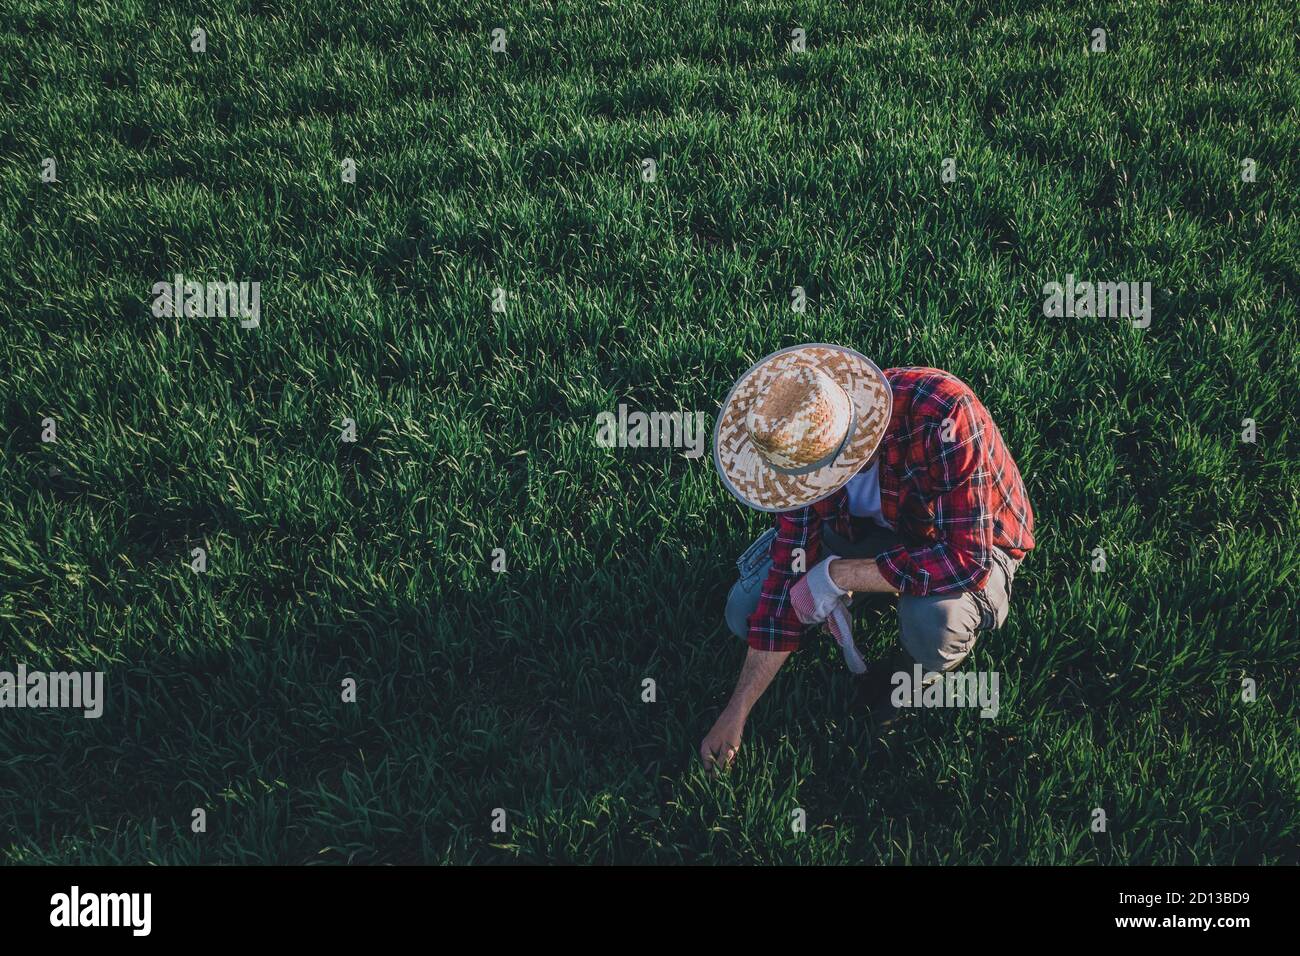 Weizenbauer analysiert die Entwicklung der Ernte, Erwachsene männliche Landarbeiter, die auf der Weizengrasplantage aufsuchen Stockfoto